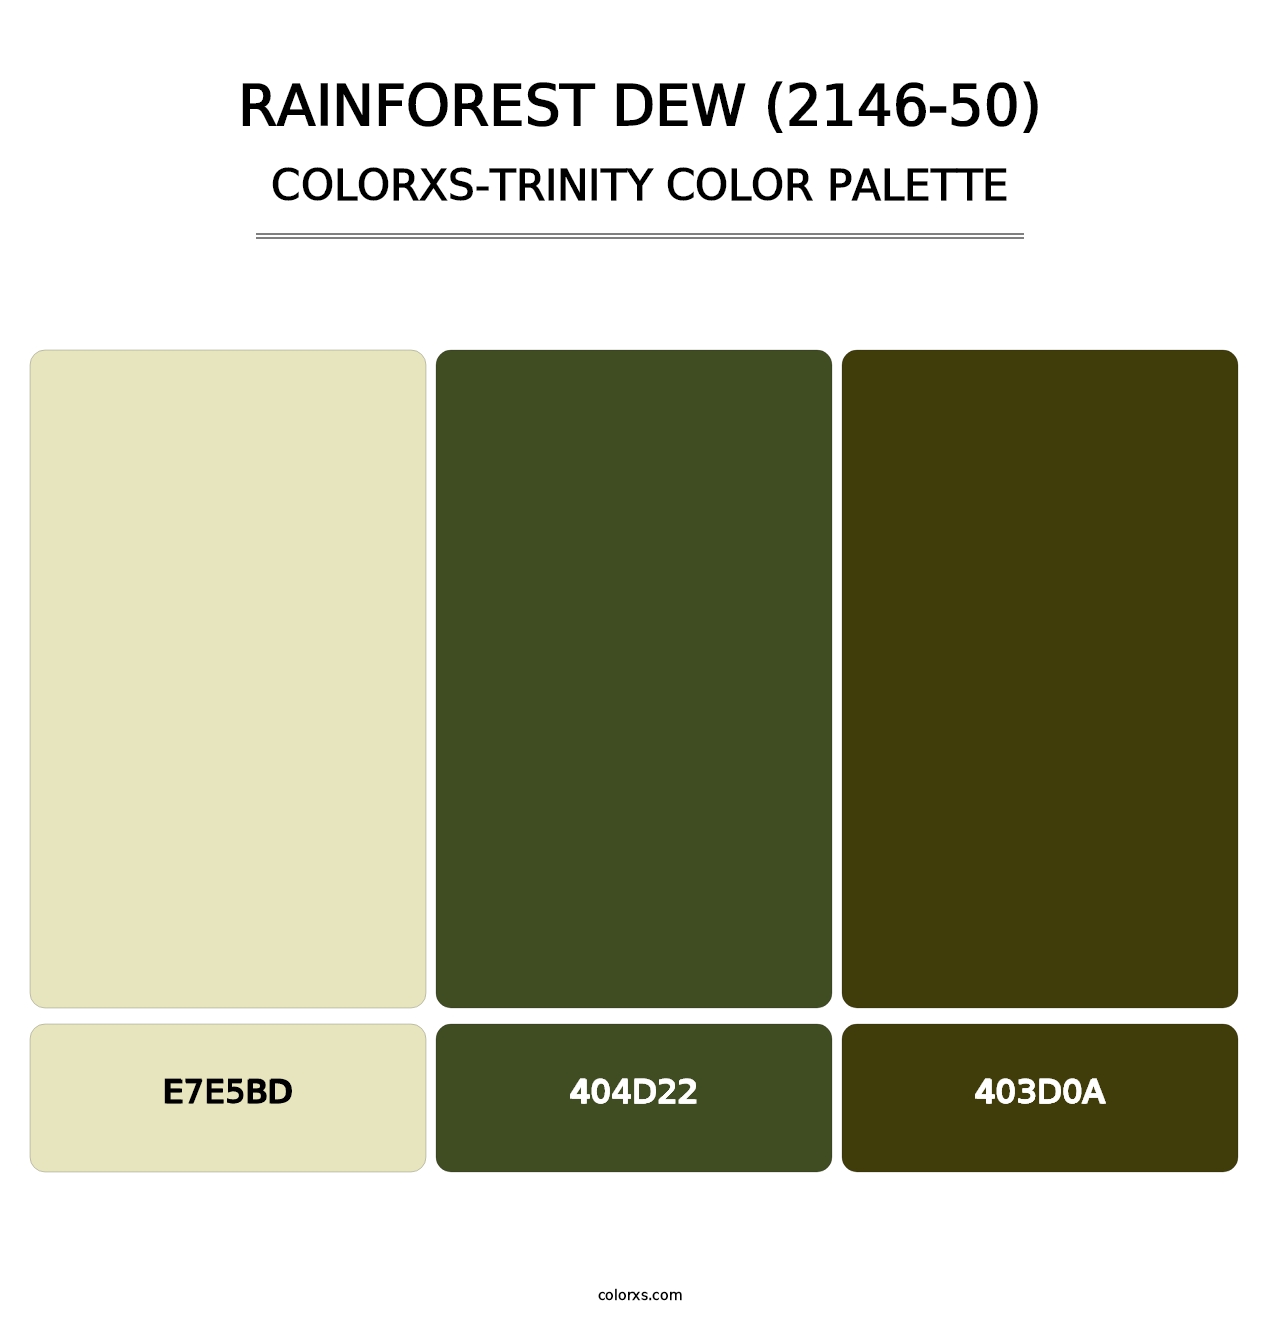 Rainforest Dew (2146-50) - Colorxs Trinity Palette